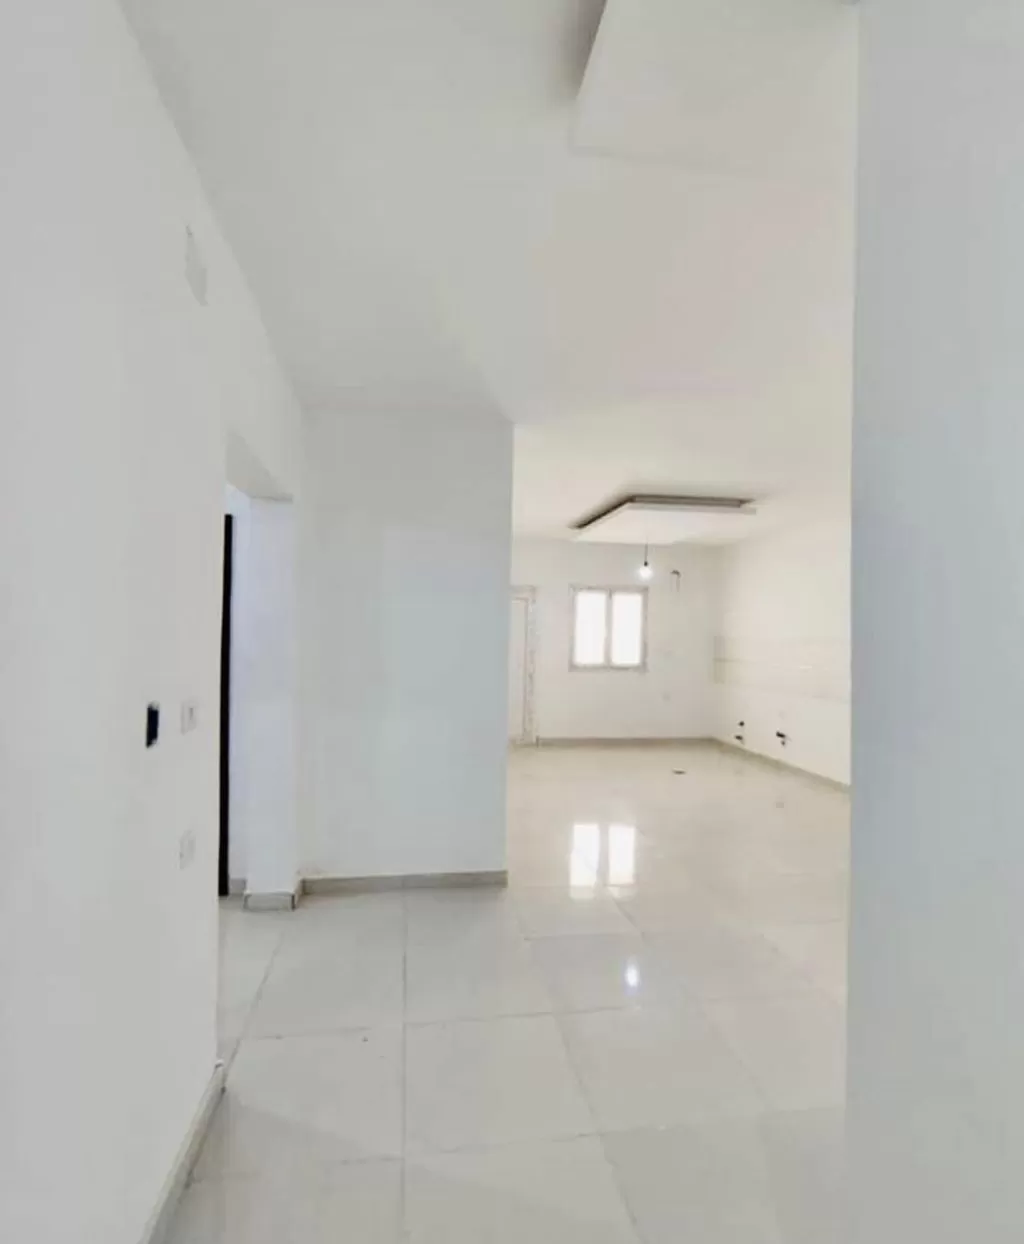 سكني عقار جاهز 2 غرف  غير مفروش شقة  للإيجار في عجمان #52104 - 1  صورة 